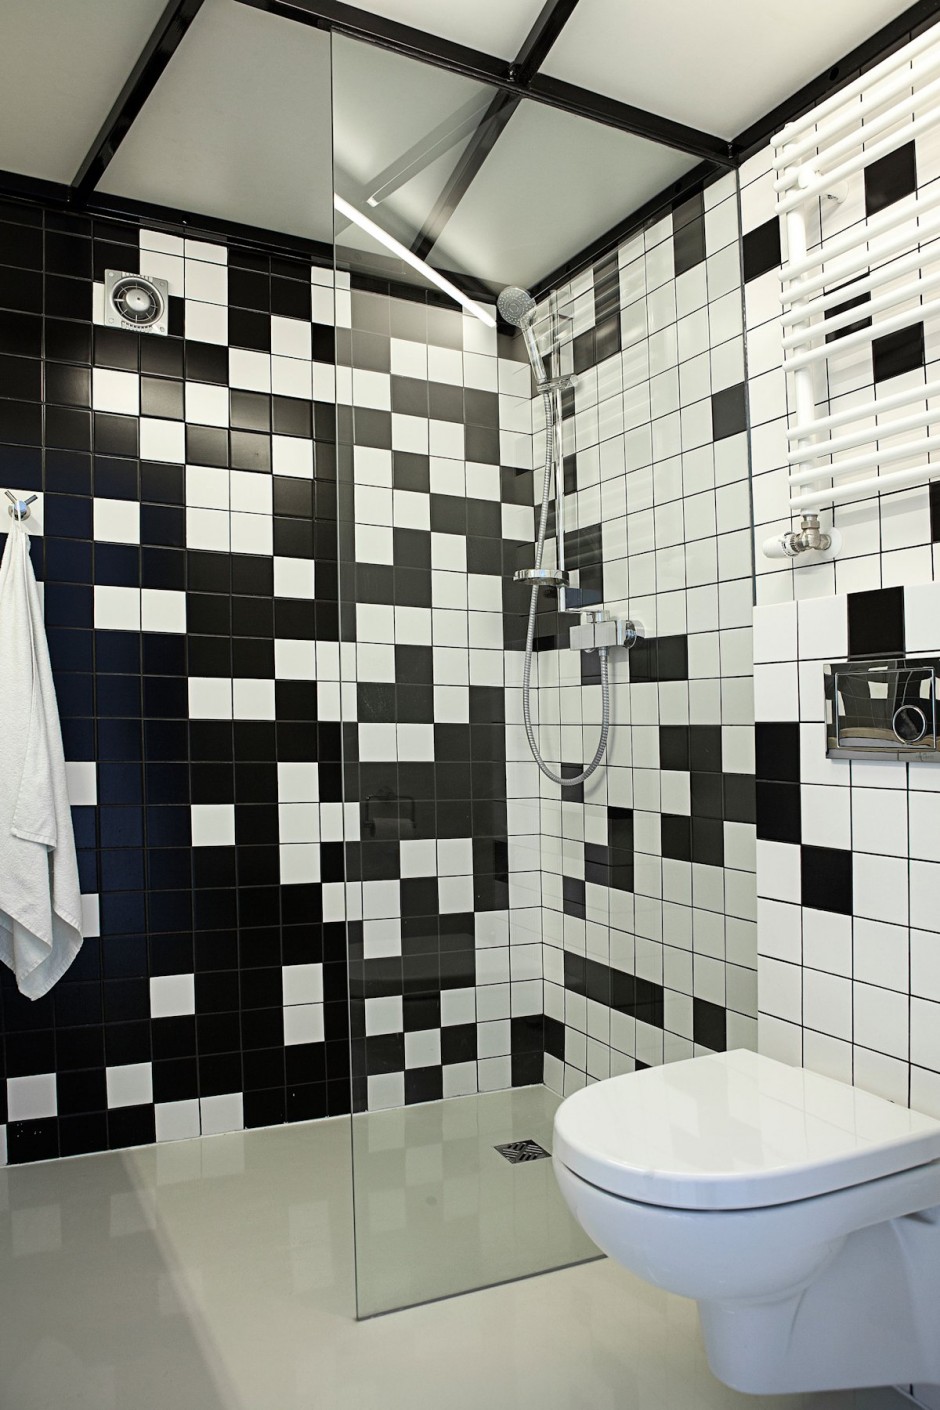 Black and white tiled bathroom